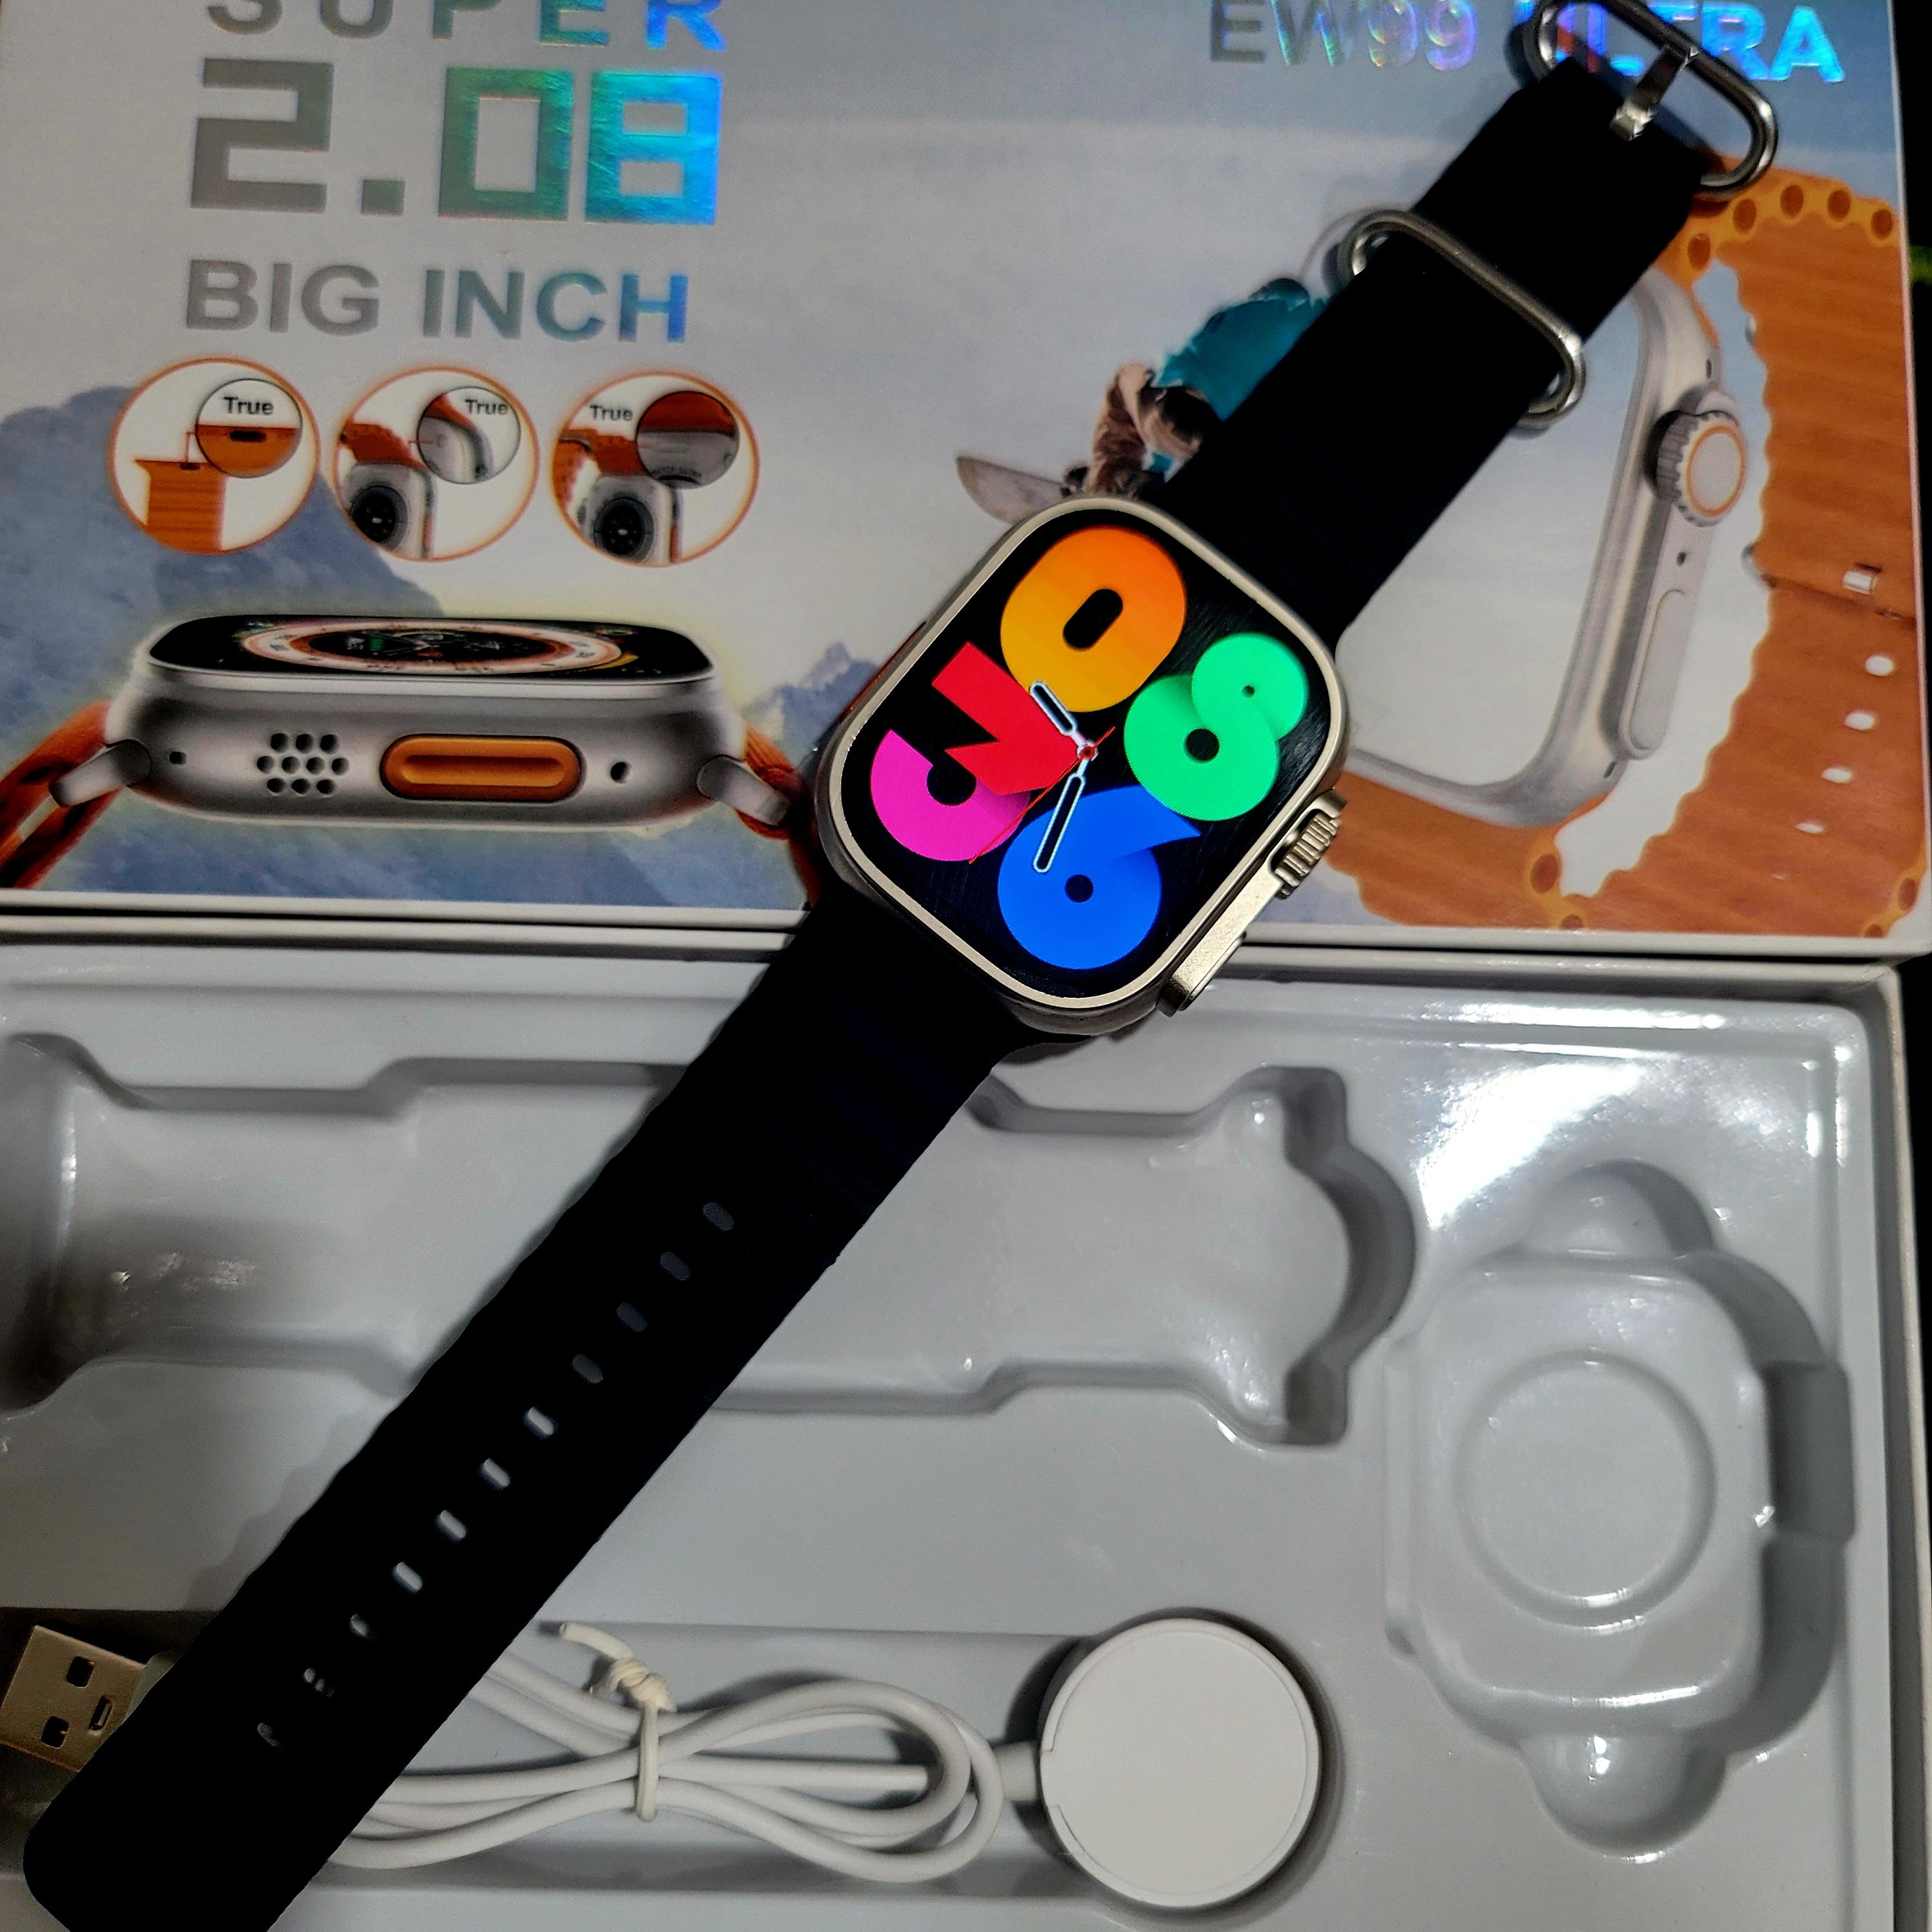 EW99 Ultra Smart Watch